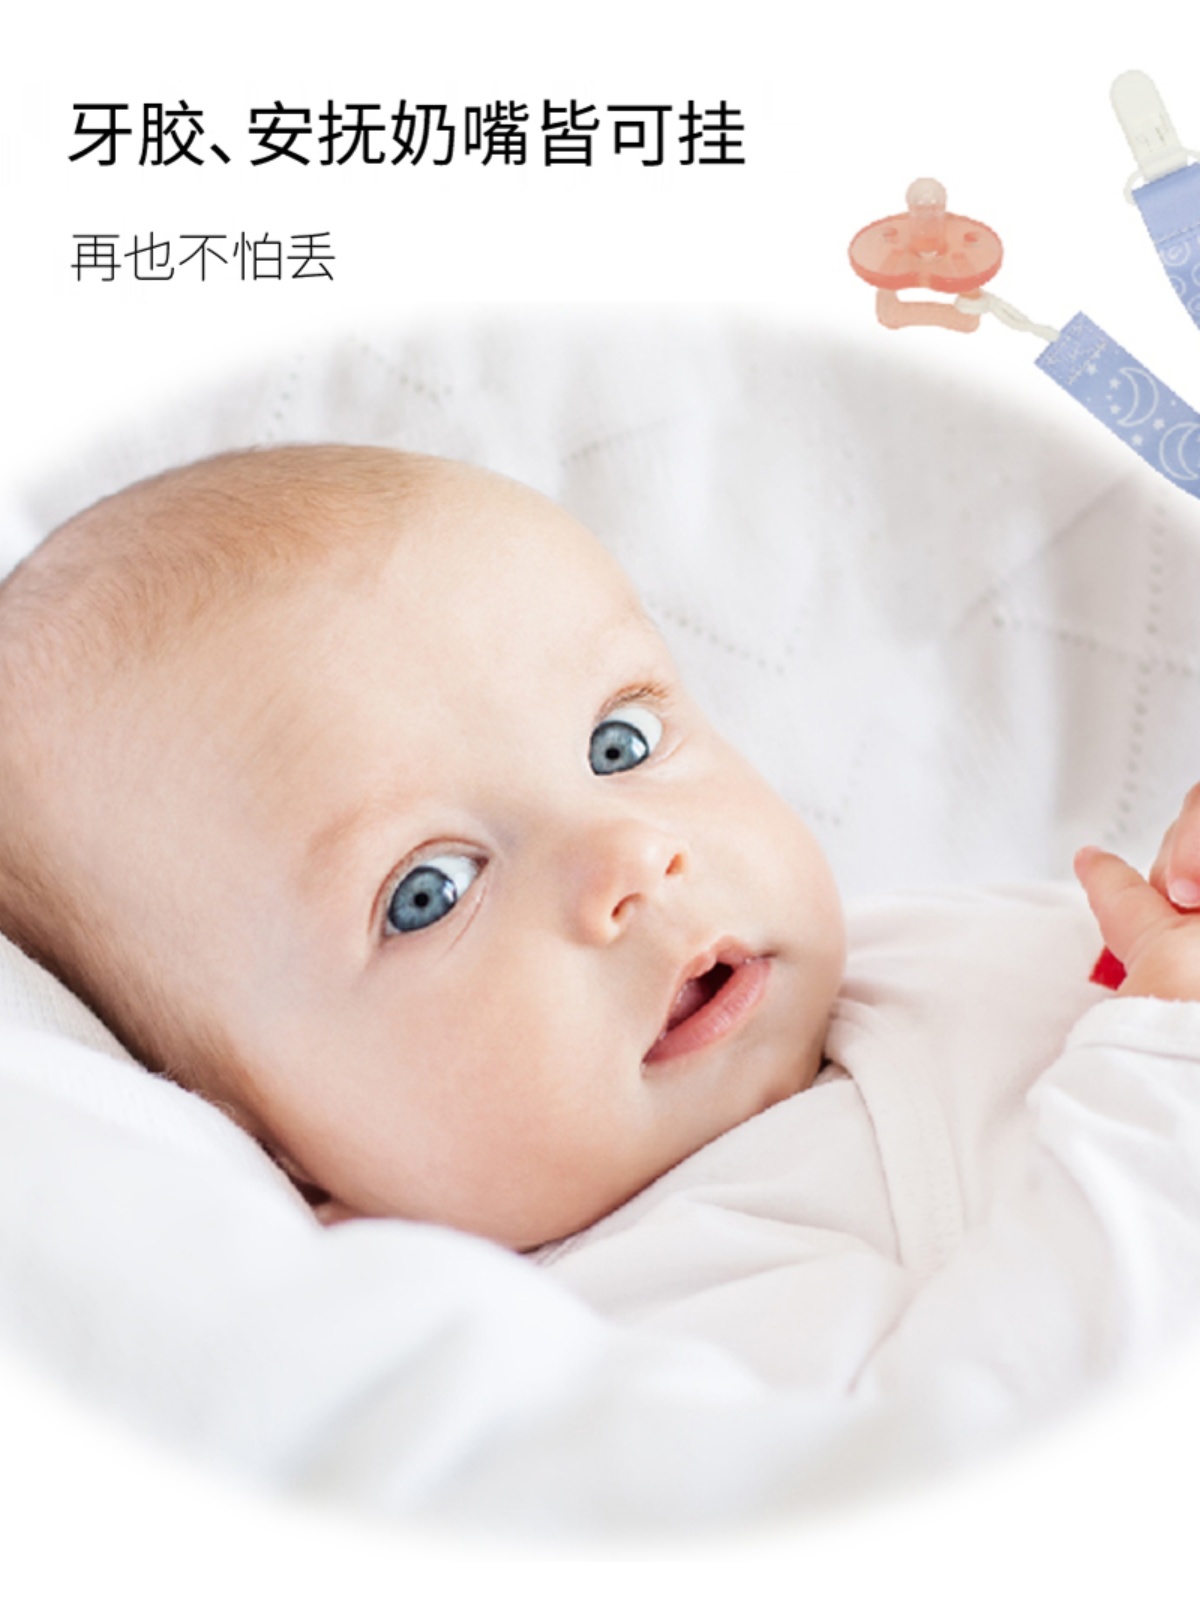 优生安抚奶嘴链宝宝新生婴儿奶嘴夹防掉链牙胶玩具奶嘴防掉绳子